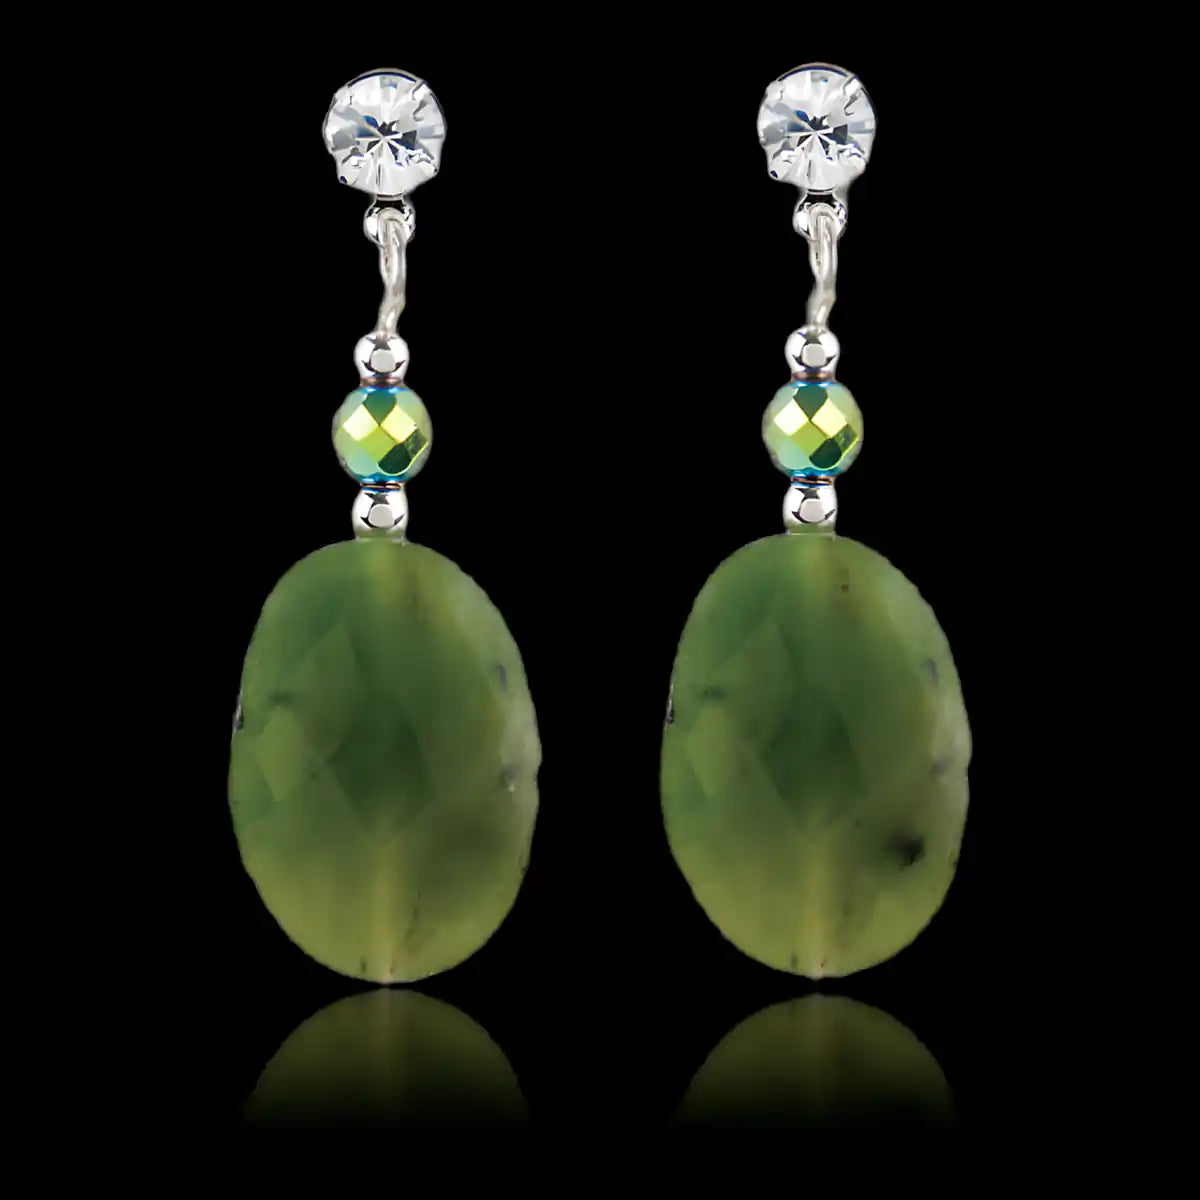 Jade timeless earrings